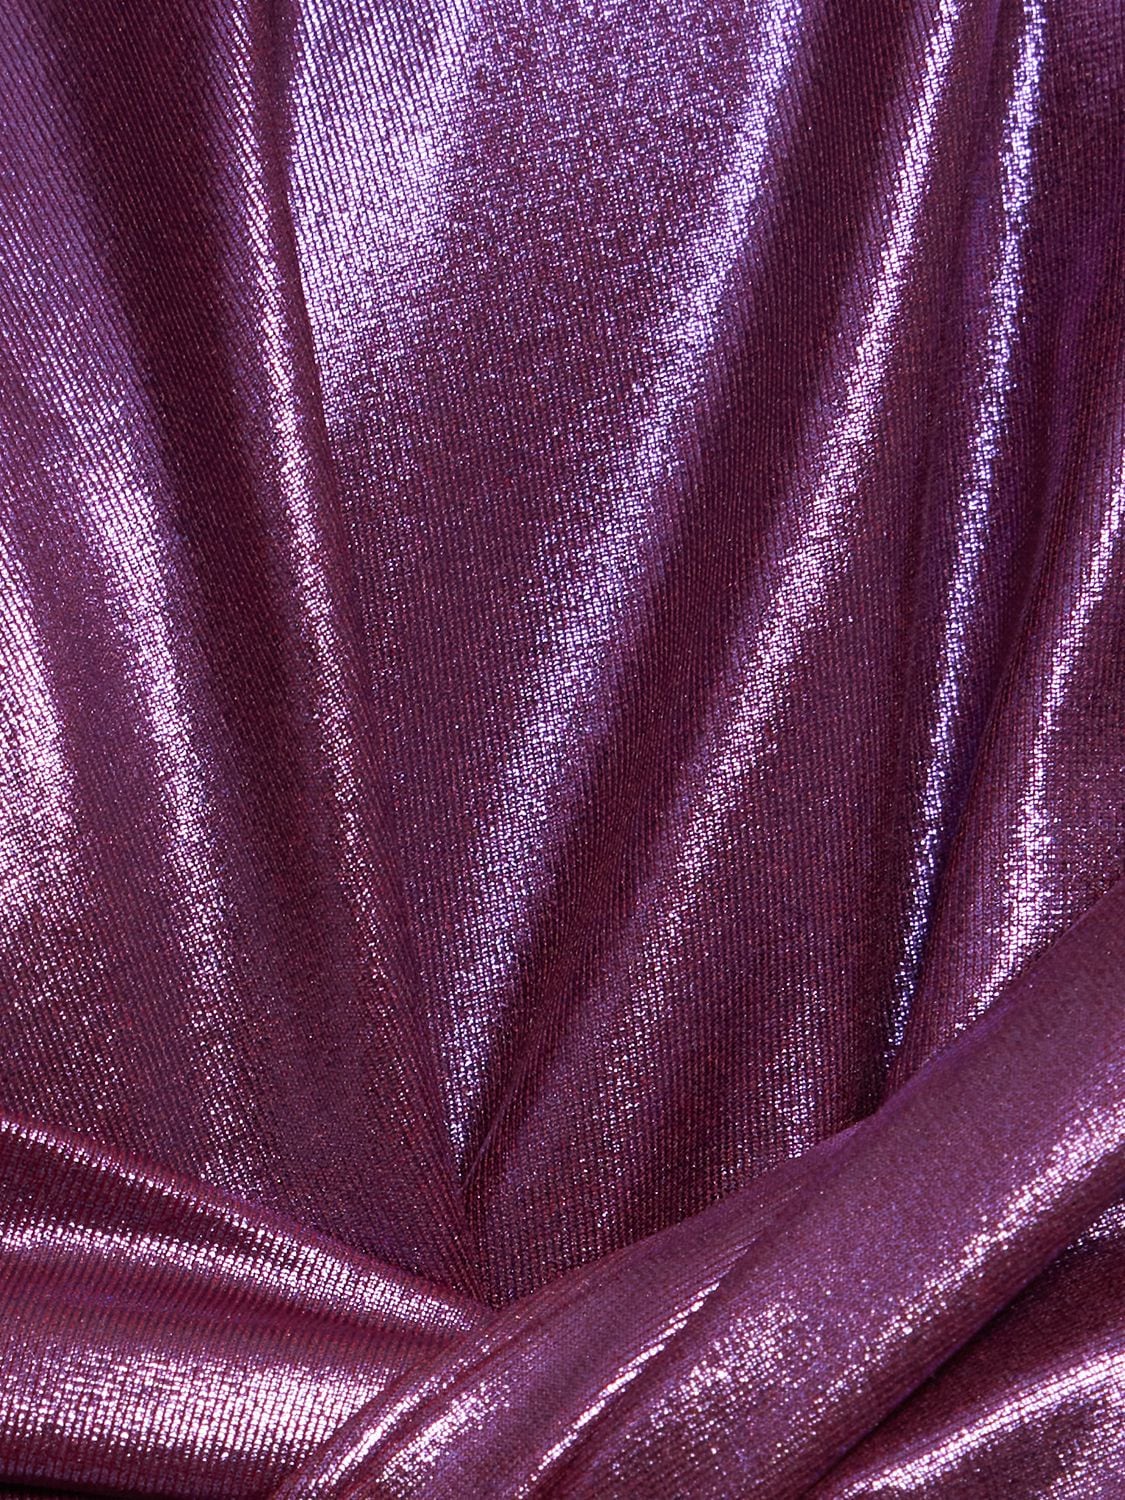 Shop Attico Crossed Cutout Bikini In Purple